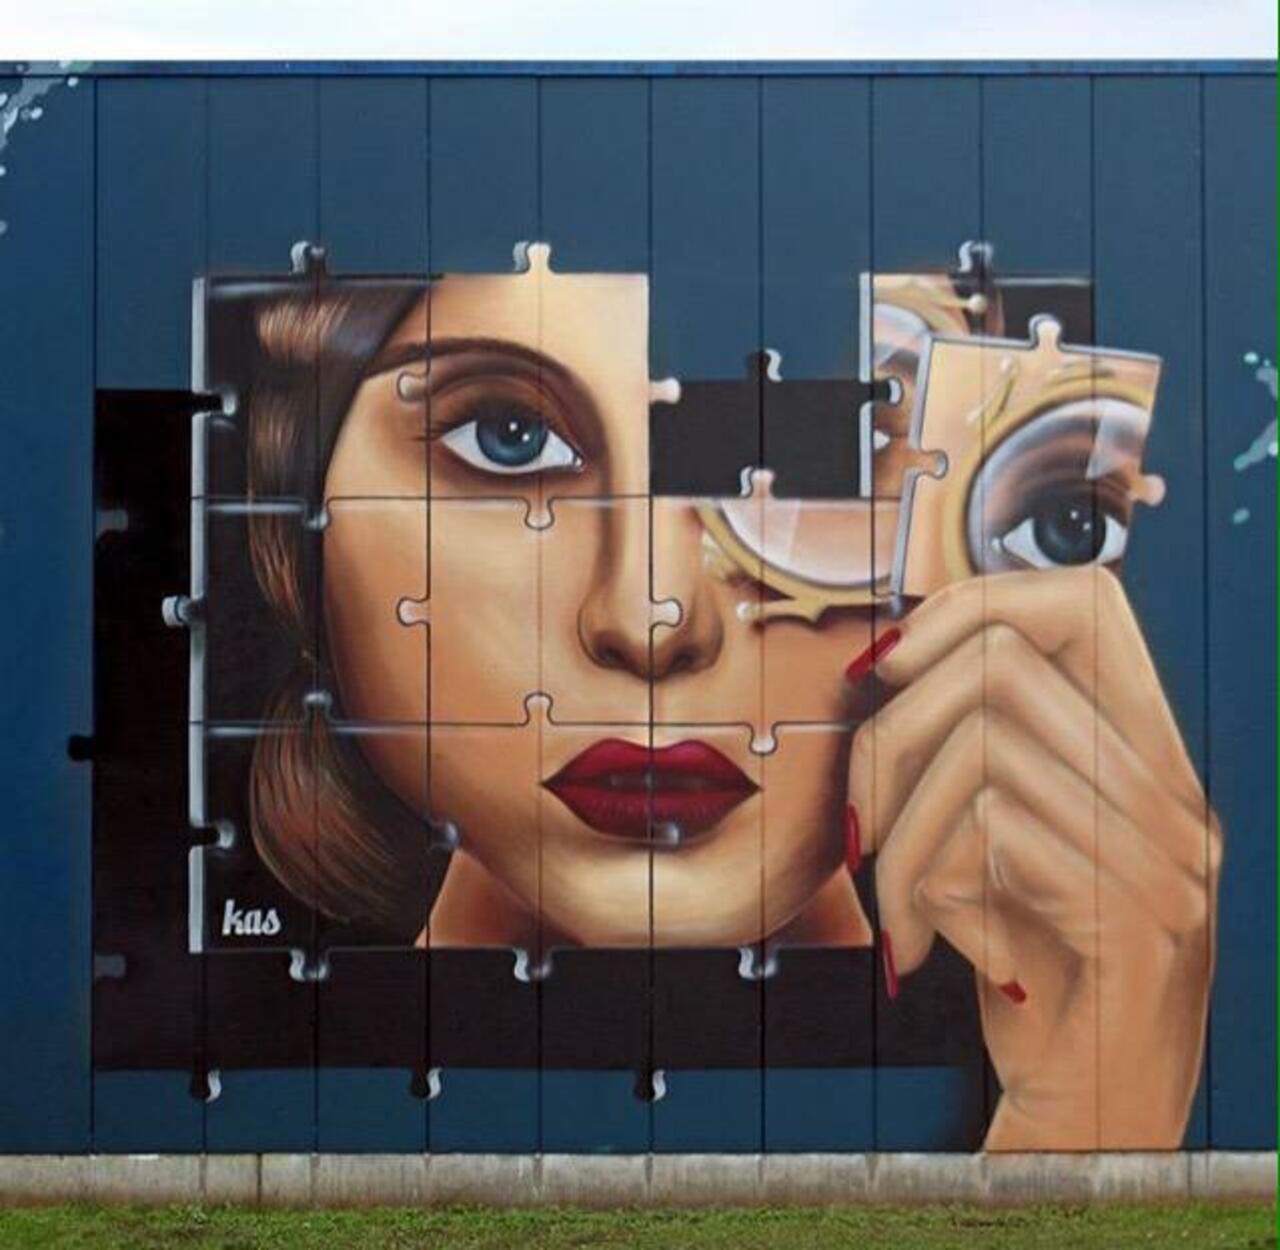 Kas Art's new Street Art "Piece of me" in Aalst Belgium 

#art #graffiti #mural #streetart http://t.co/e6ckHXUUk0